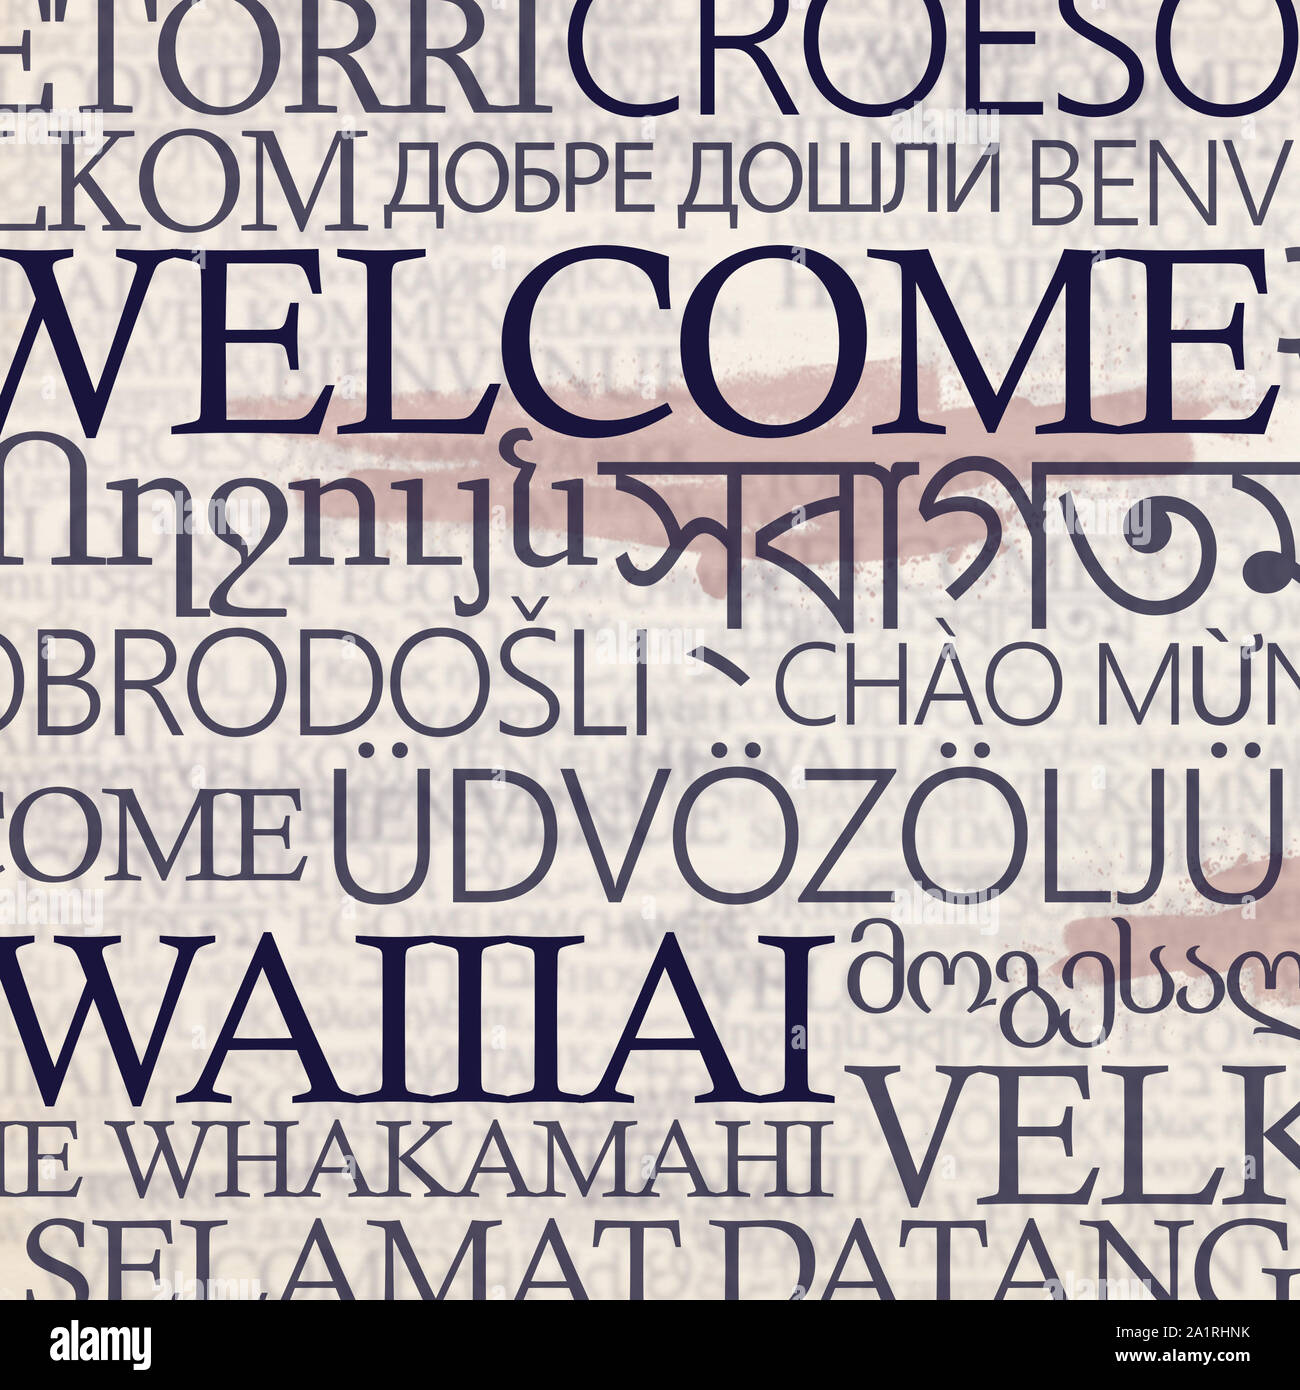 Multinationale stand mit Wort herzlich Willkommen in verschiedenen Sprachen Stockfoto